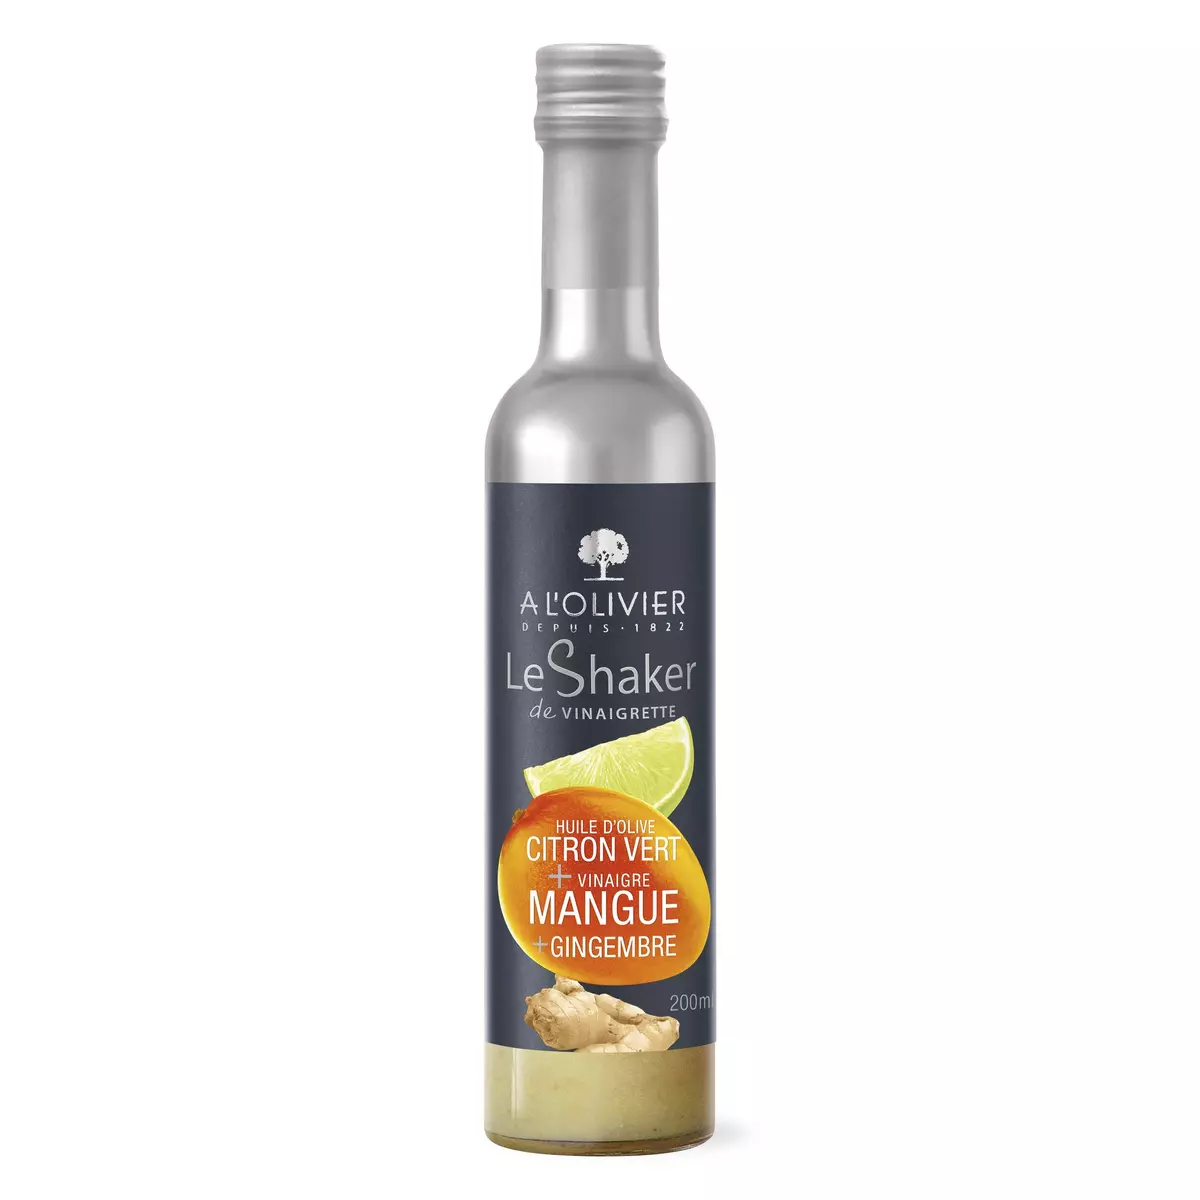 A L'OLIVIER Le shaker huile d'olive citron vert vinaigre de mangue et gingembre 20cl